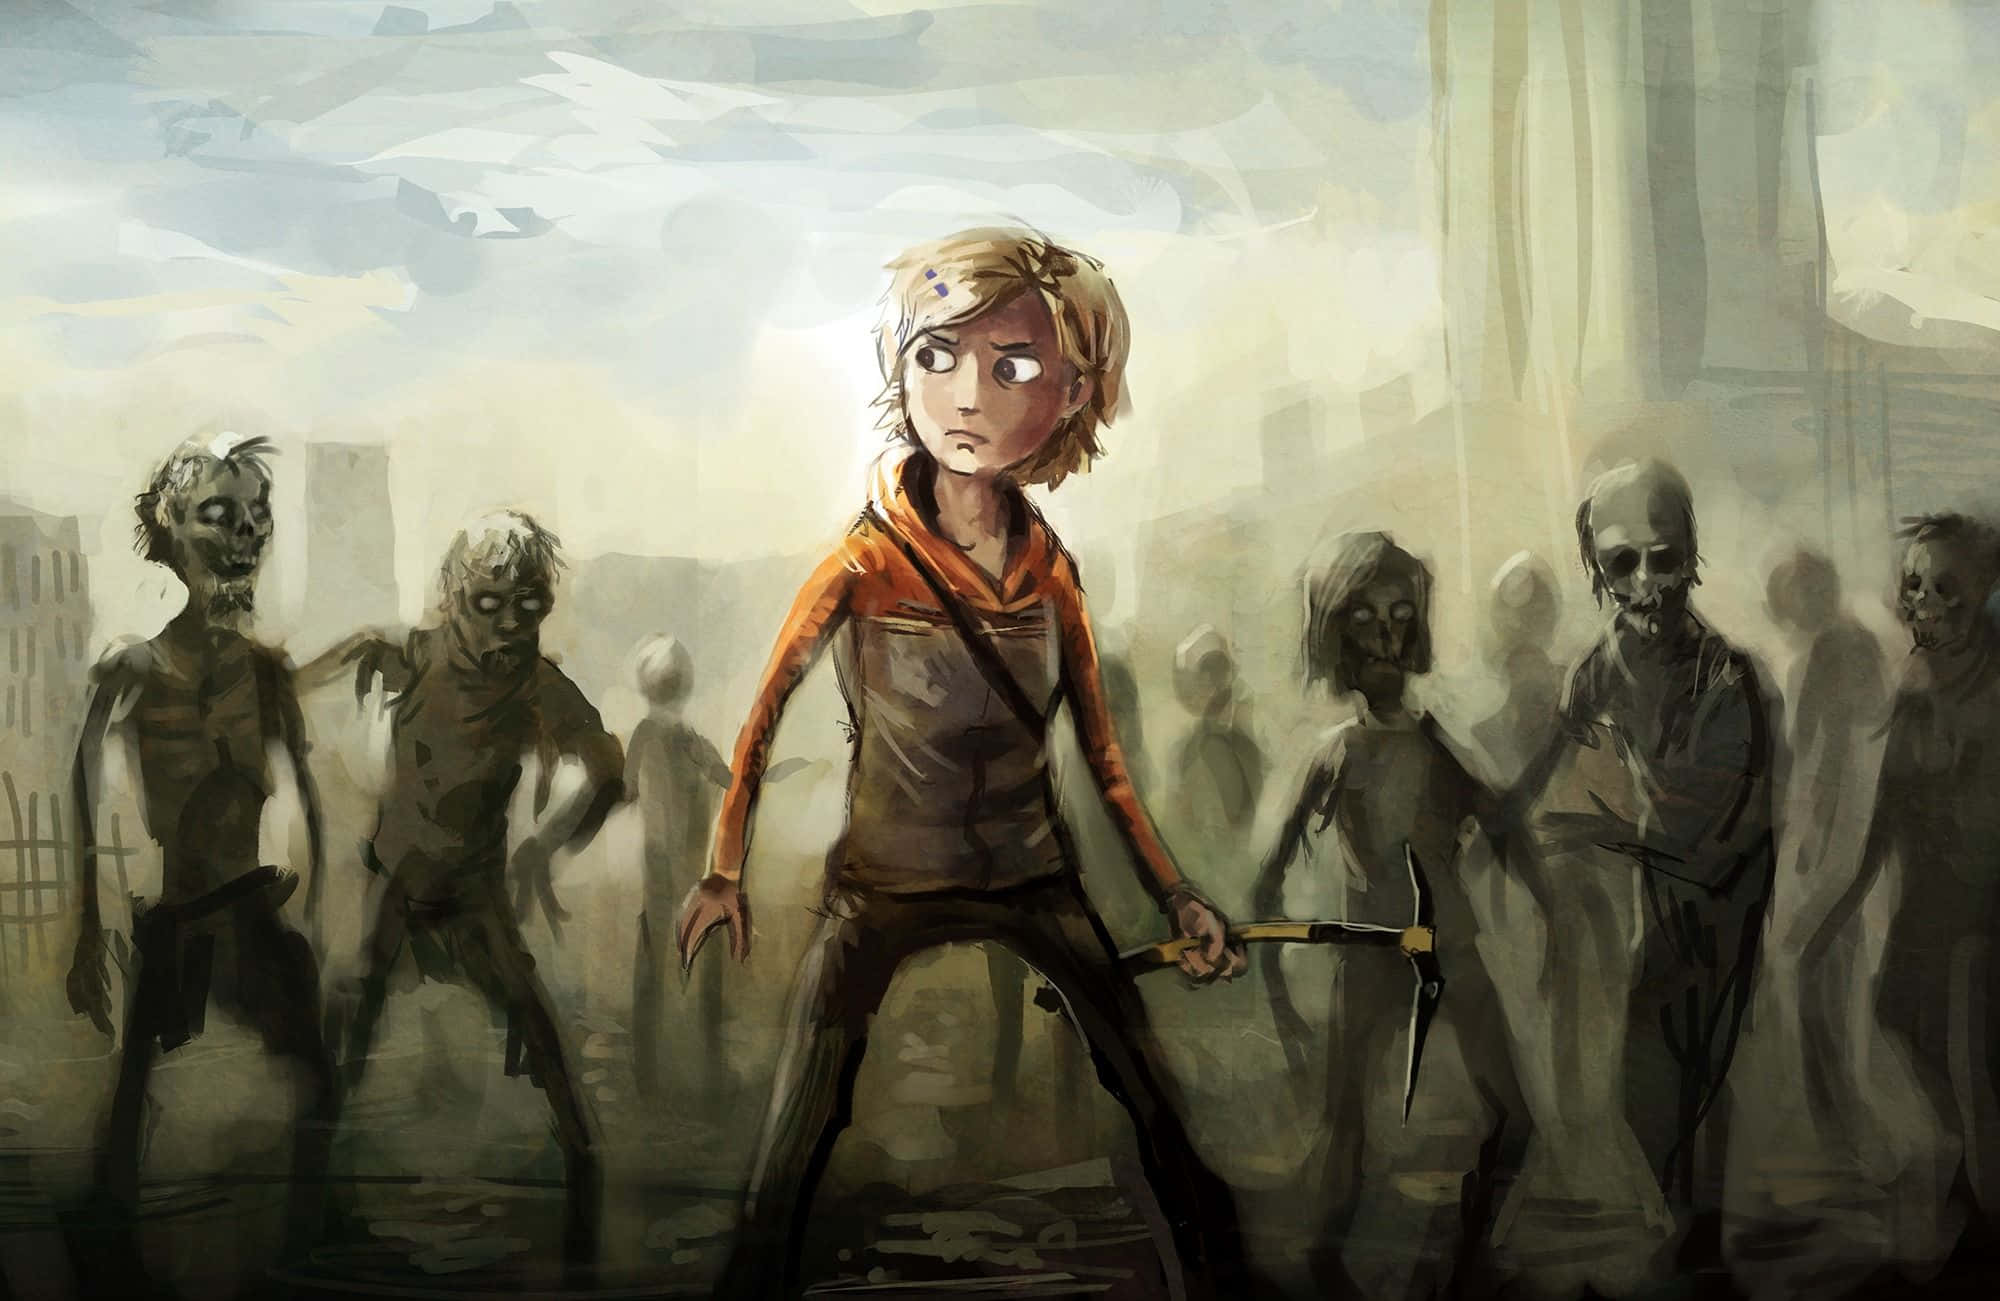 Unascena Intensa Di The Walking Dead Con I Personaggi Chiave Circondati Da Zombie.